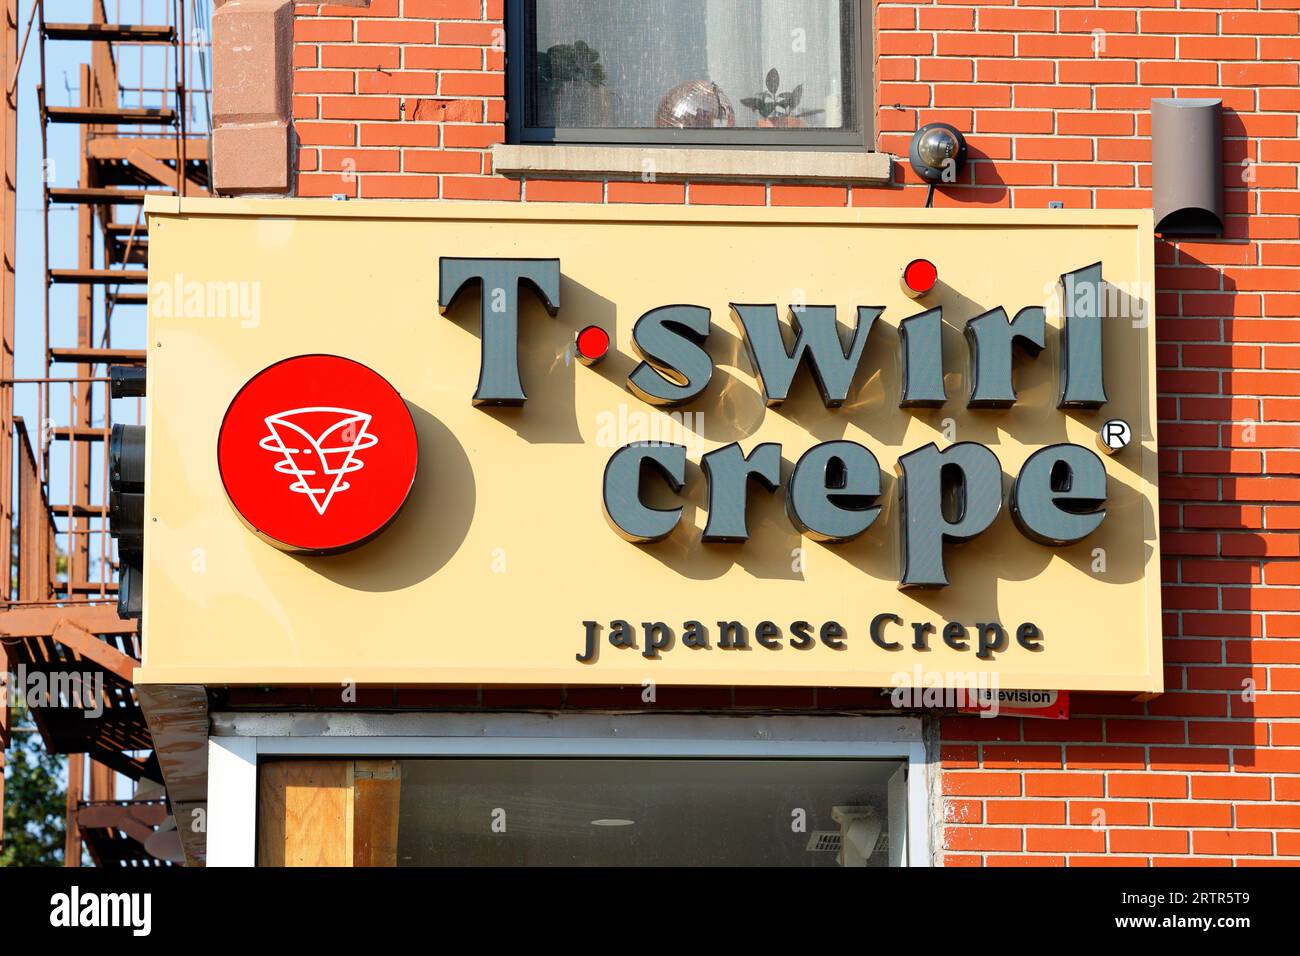 Beschilderung für T Swirl Crepe an einem Franchise-Standort in Brooklyn, New York City. Stockfoto